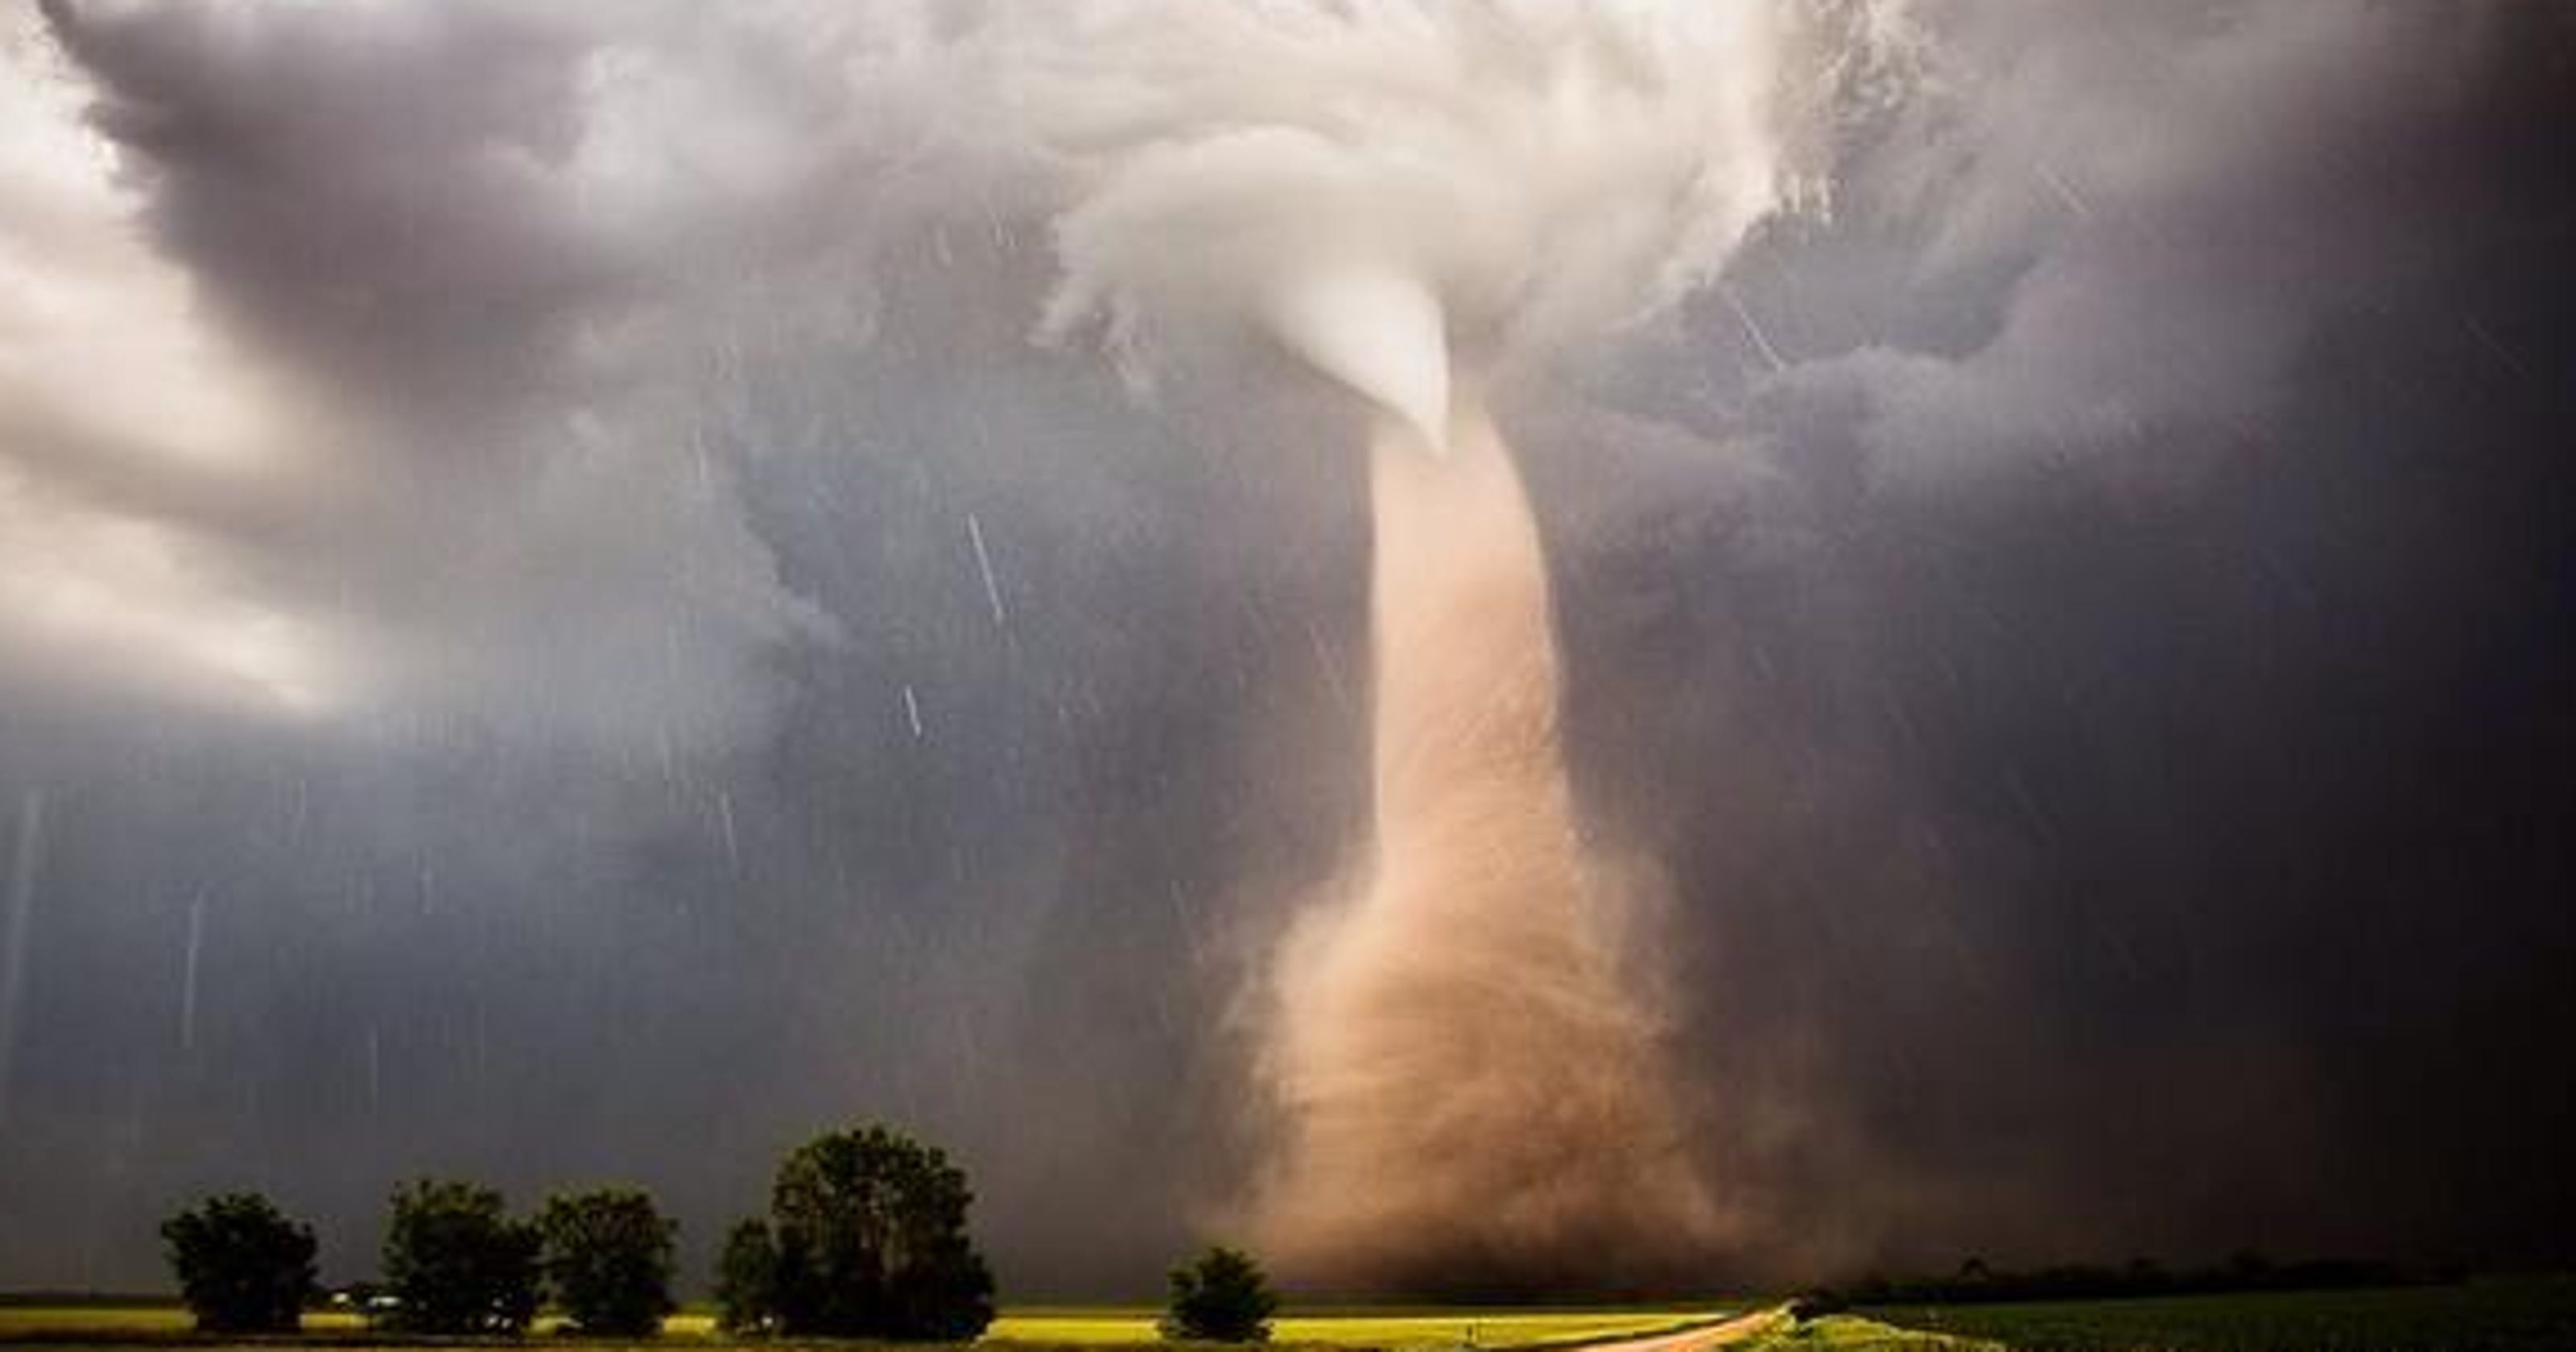 Scary tornado roars in Nebraska3200 x 1680